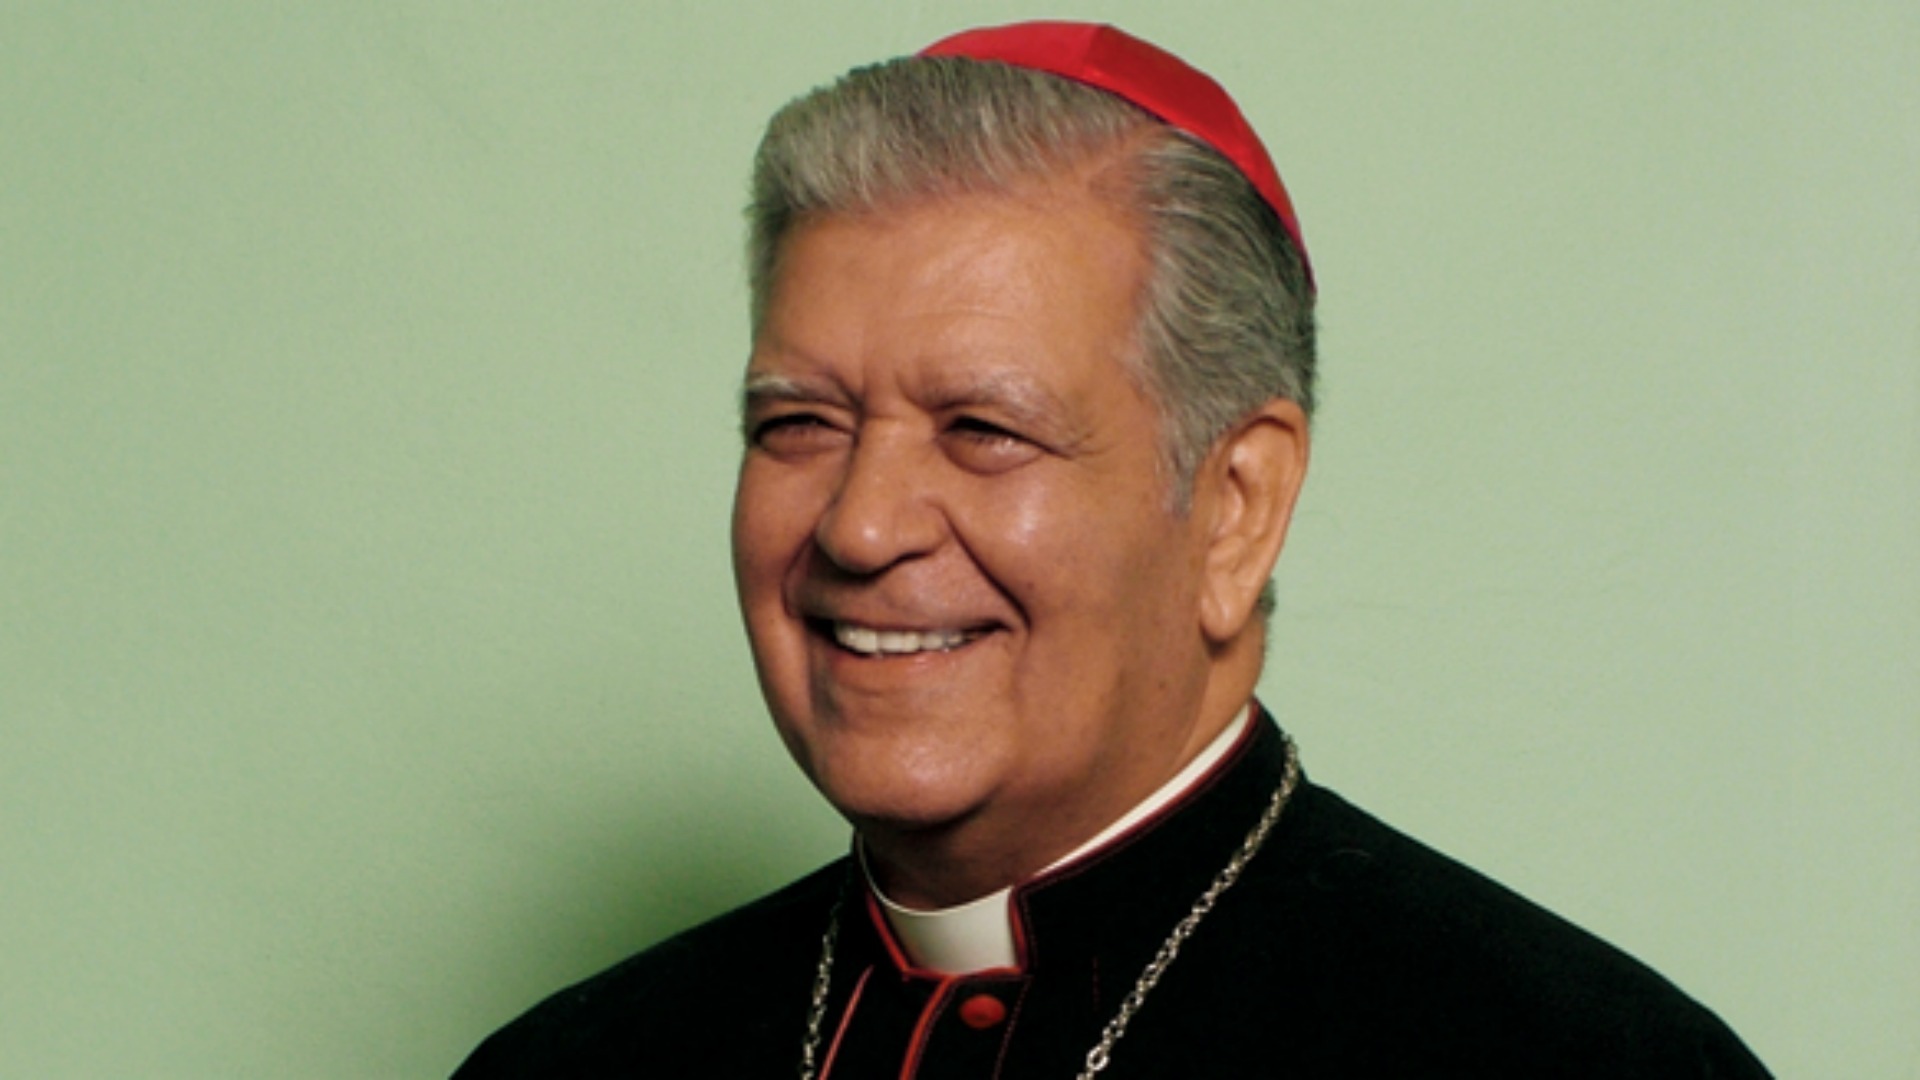 Cardinal Jorge Urosa Savino, archevêque émérite de Caracas (Photo:  www.arquidiocesisdecaracas.com)